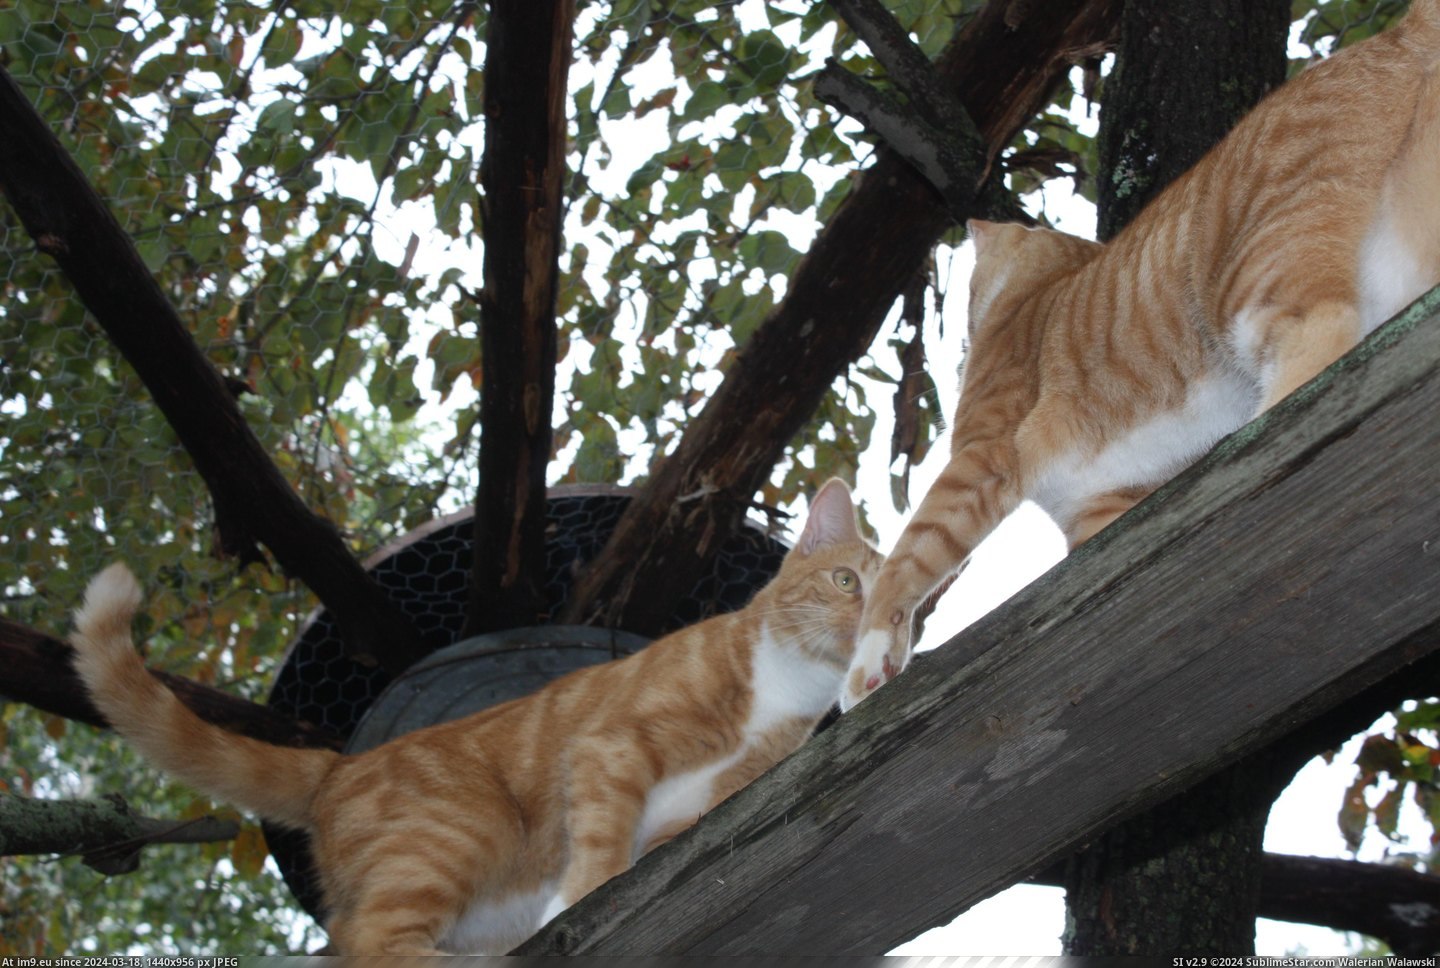 #Cats #Pen #Cat [Cats] Cat pen, cats inside! 3 Pic. (Bild von album My r/CATS favs))